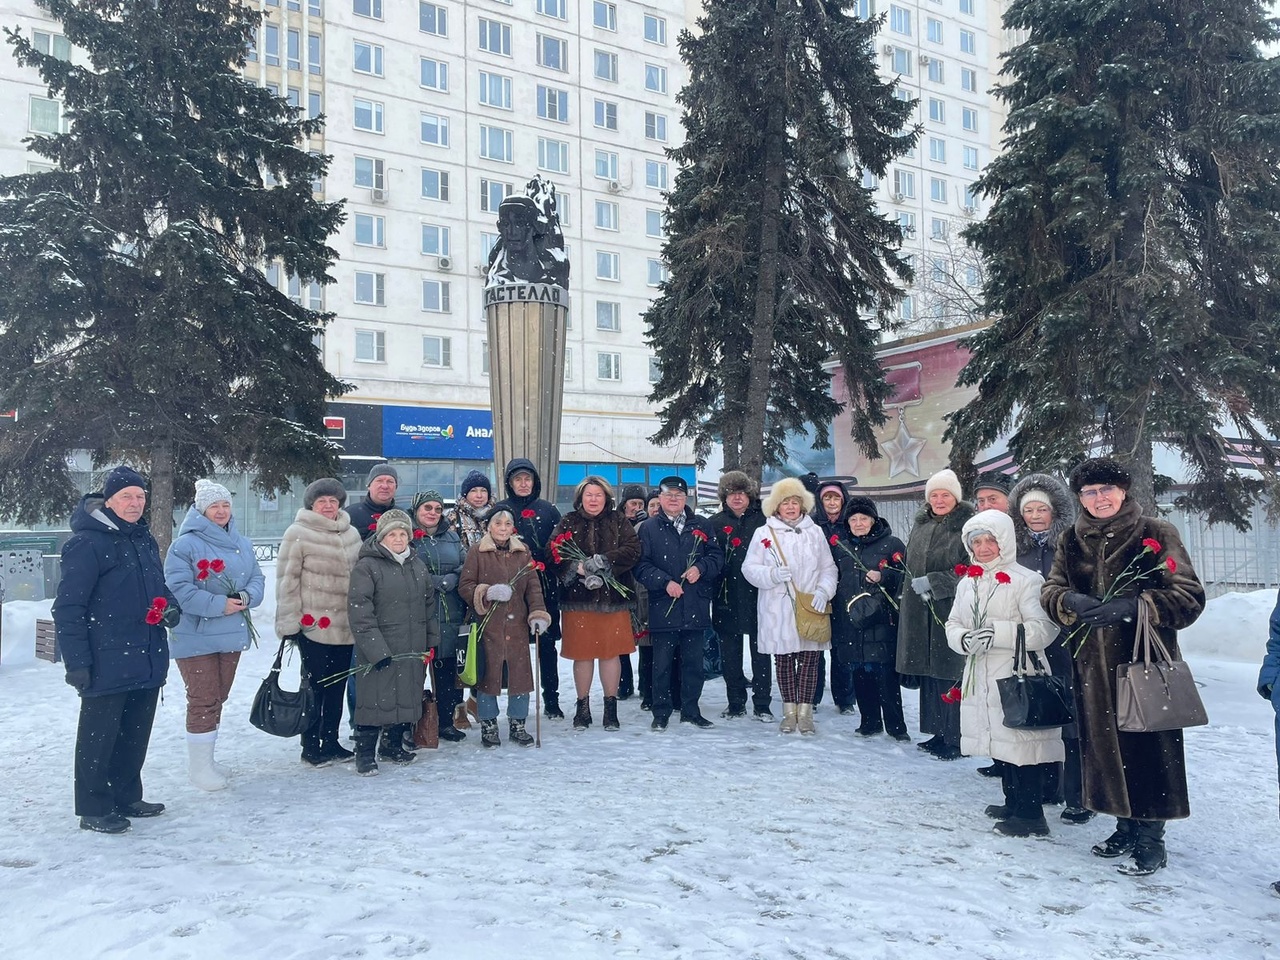 Отечества общественные советники района Сокольники приняли участие в возложении цветов к памятнику Н.Ф. Гастелло